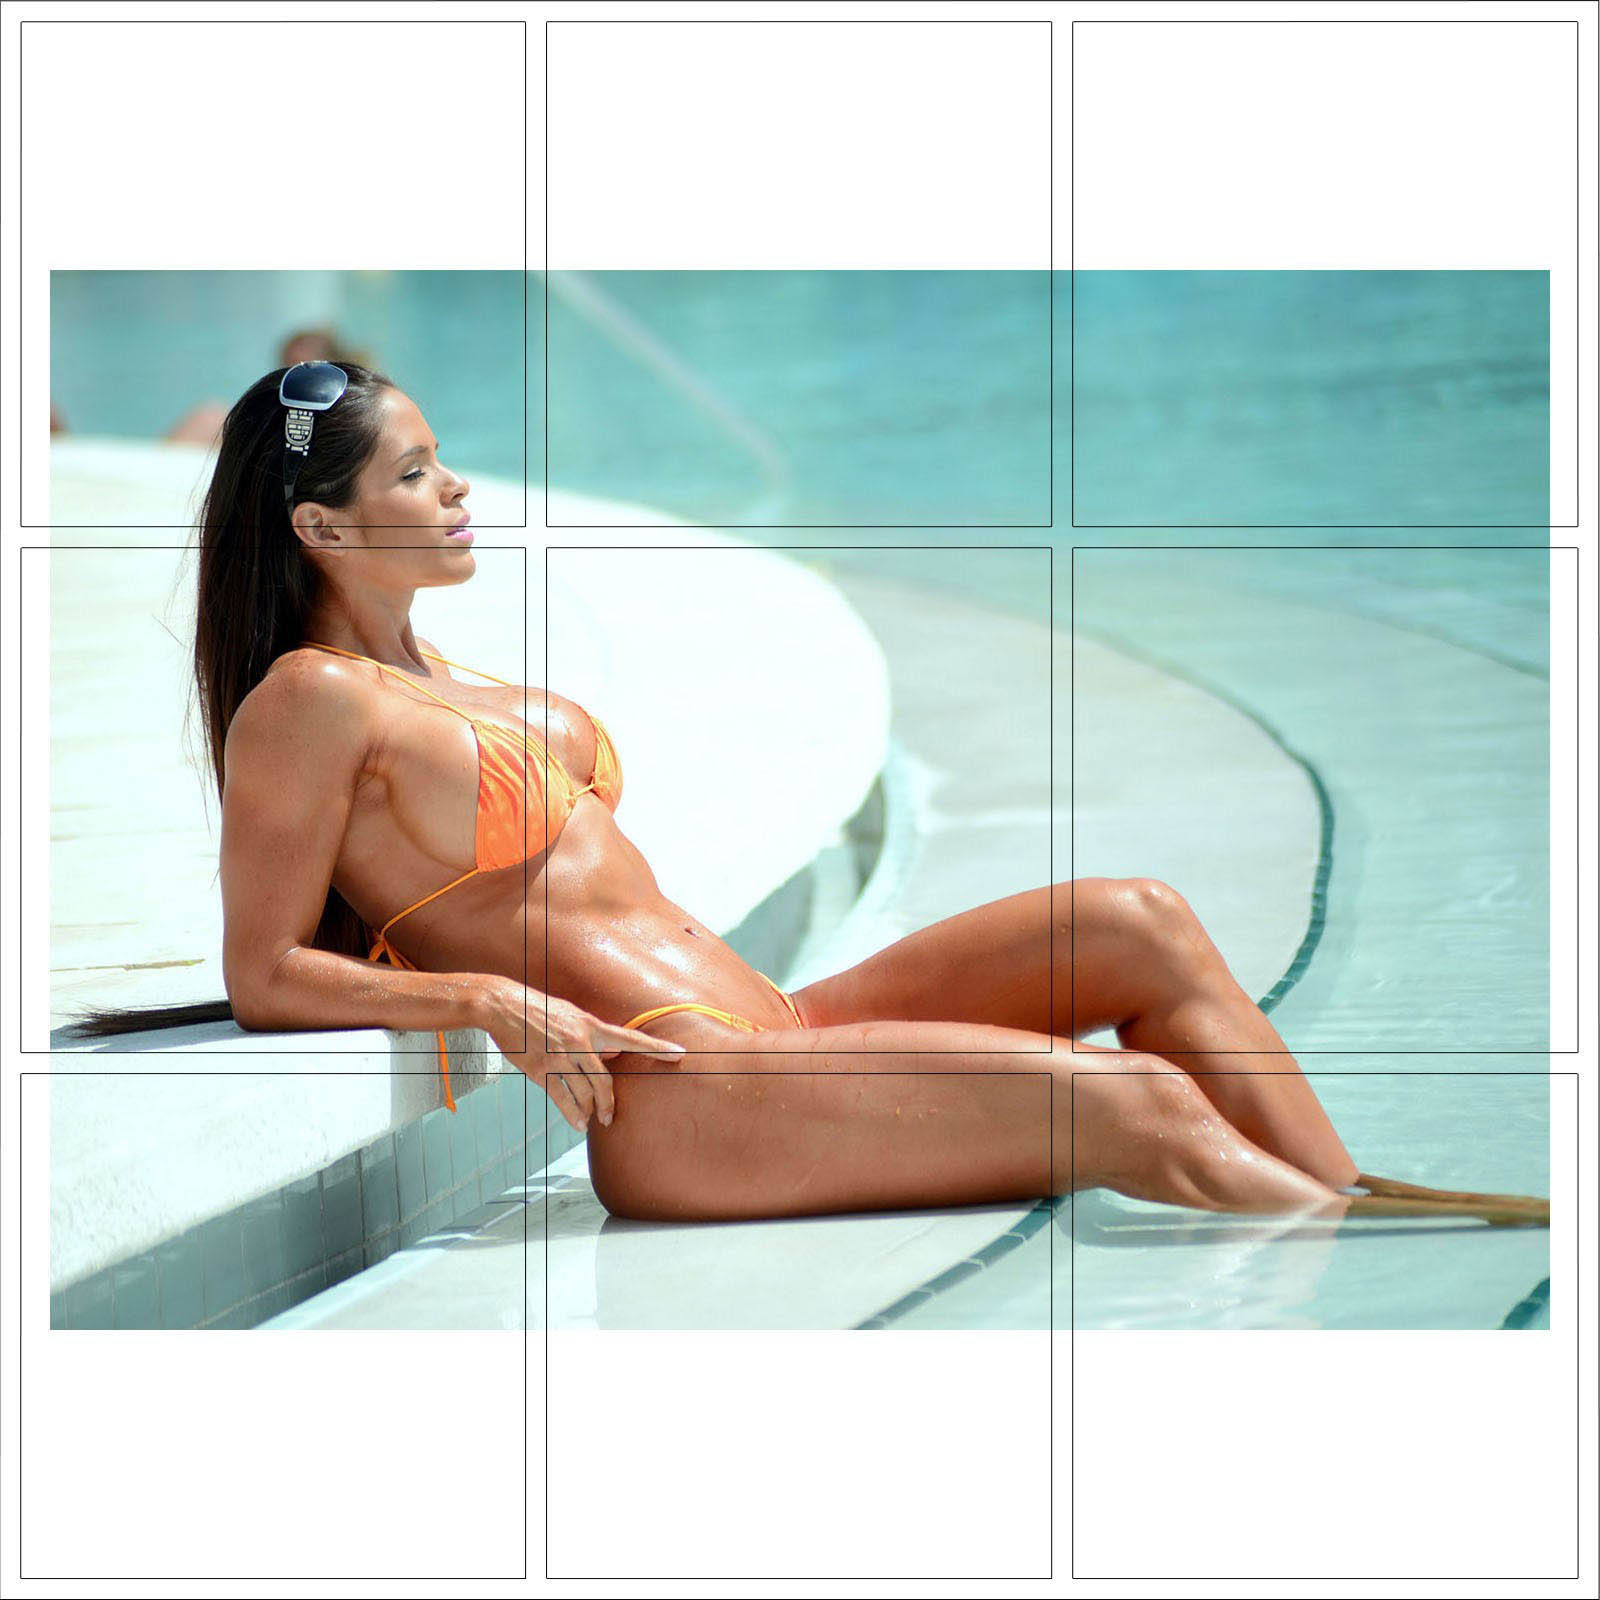 Michelle Lewin Nude - Michelle Lewin - Impression photo sexy chaude - Achetez 1, obtenez 2  GRATUITS - Choix de 73 | eBay